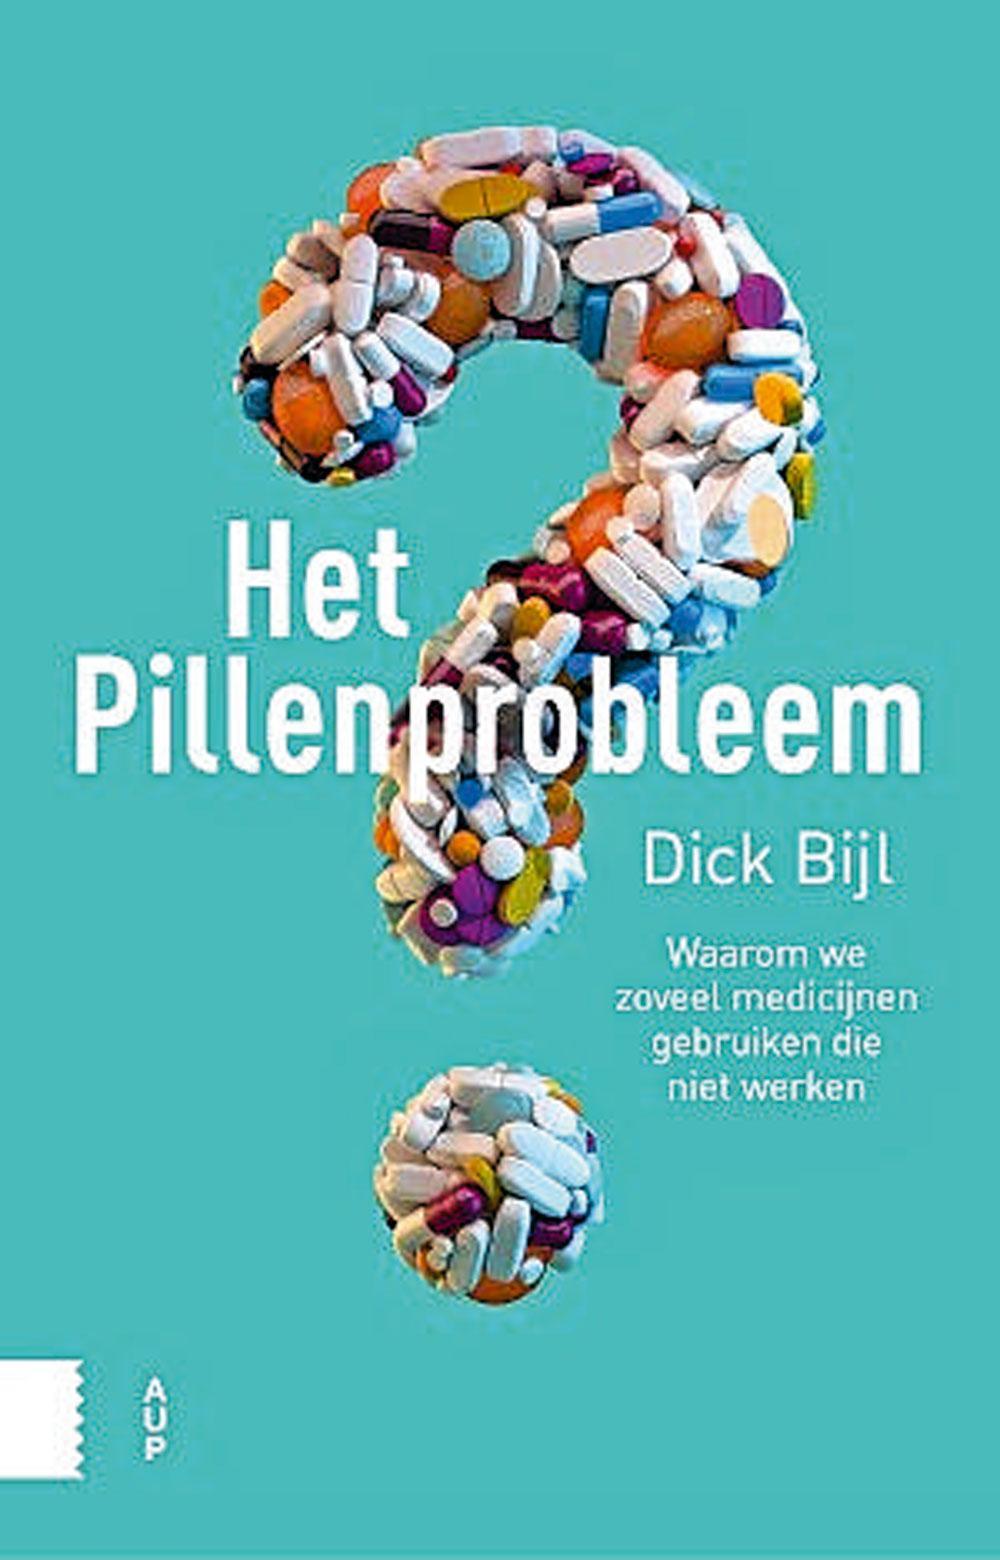 Het pillenprobleem, Dick Bijl, Amsterdam University Press, 212 blz., 14,99 euro